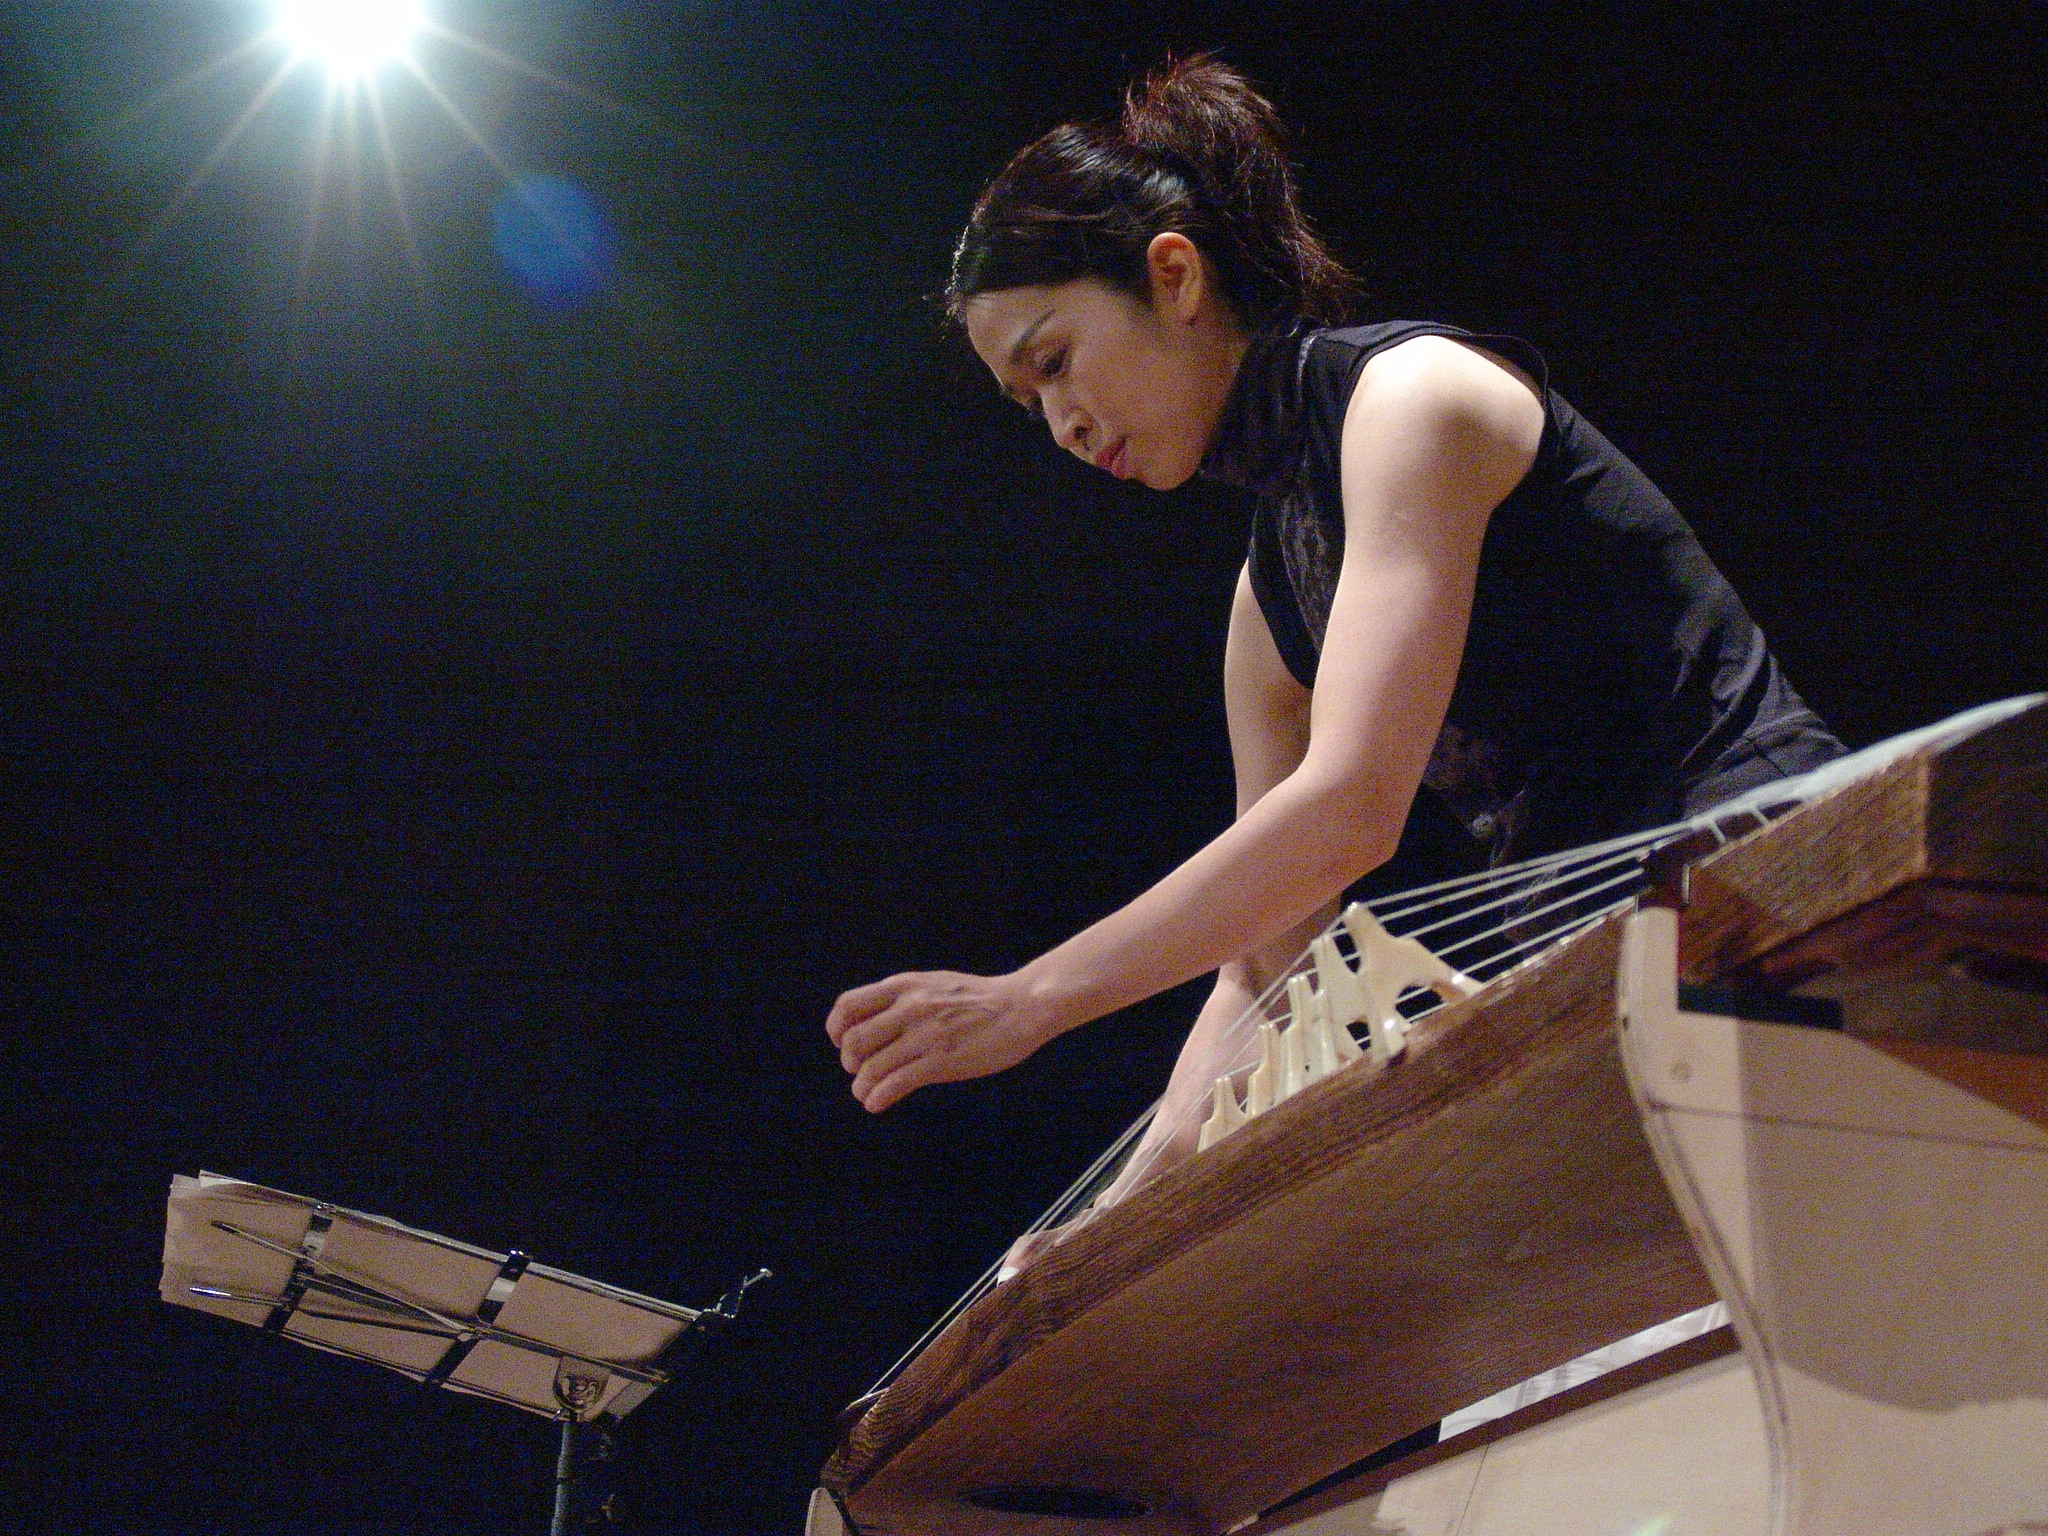 Naoko Kikuchi